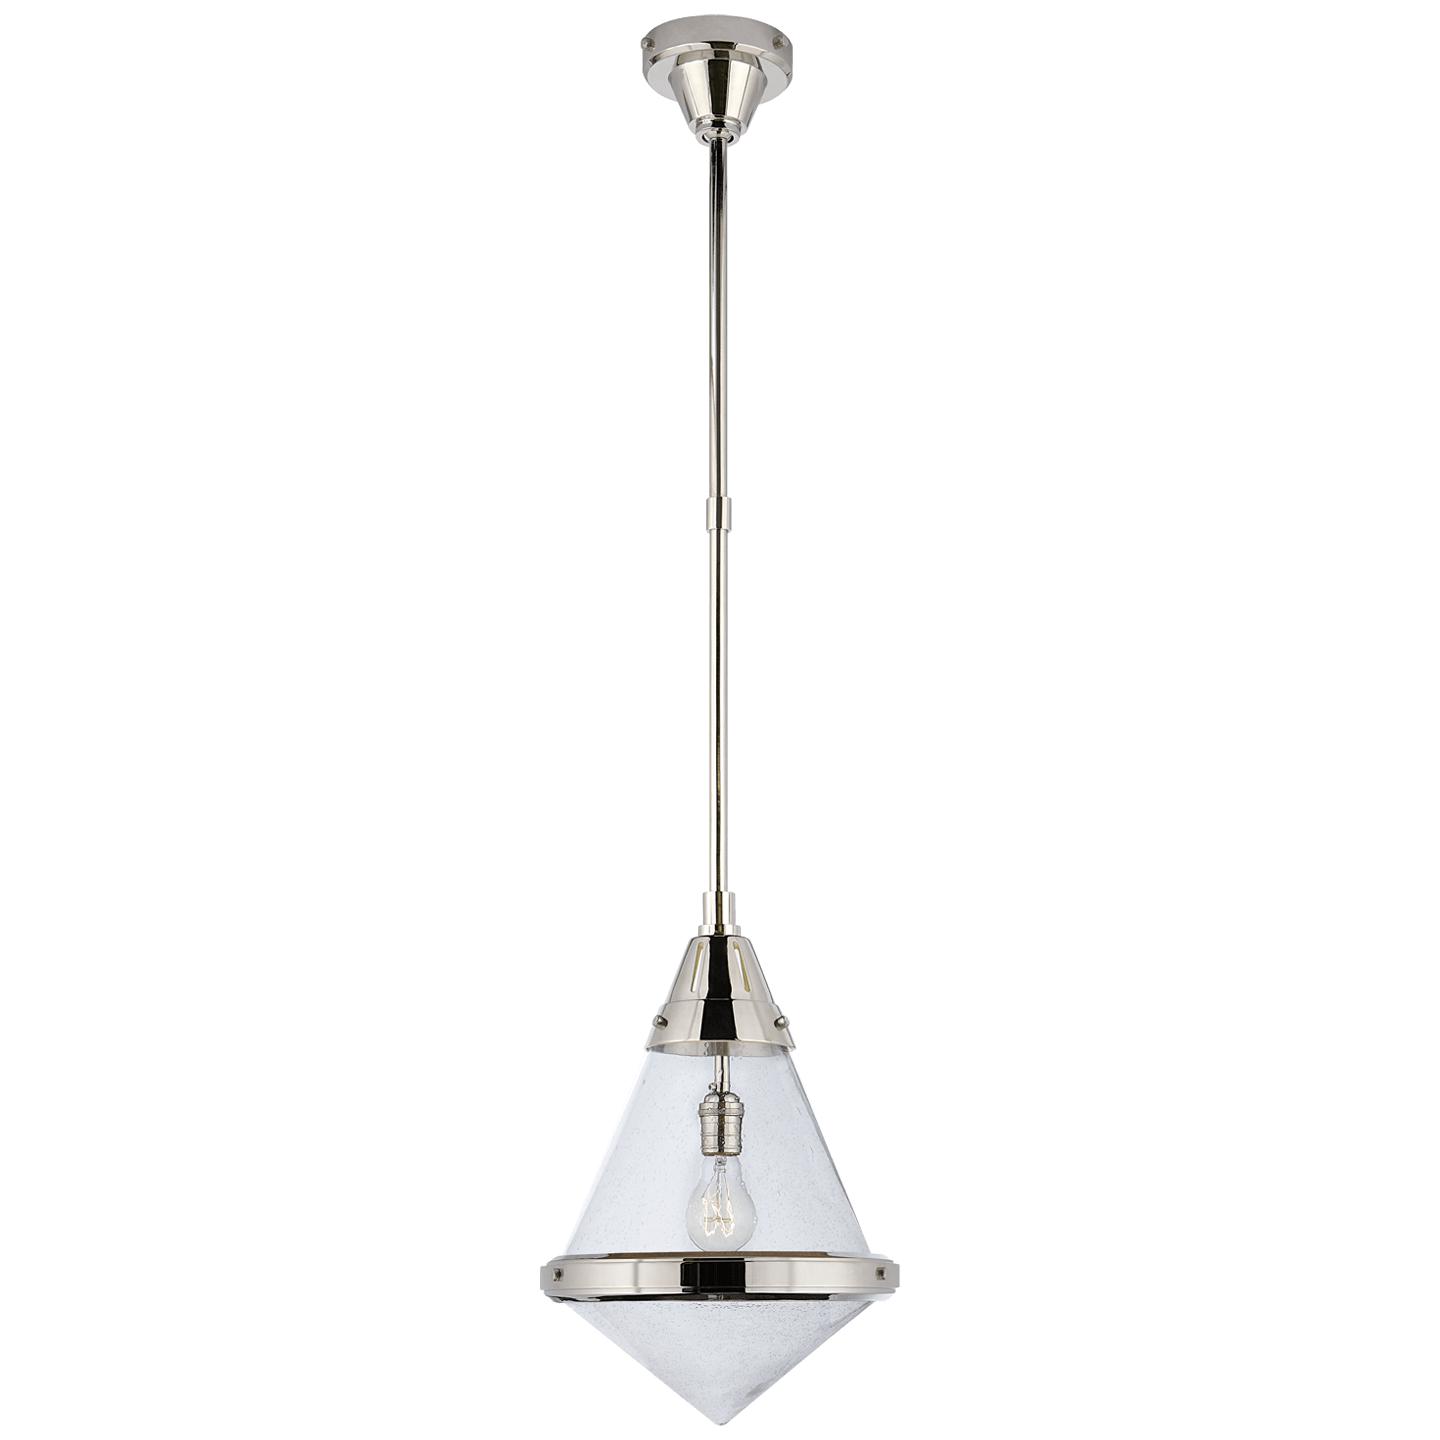 Купить Подвесной светильник Gale Small Pendant в интернет-магазине roooms.ru